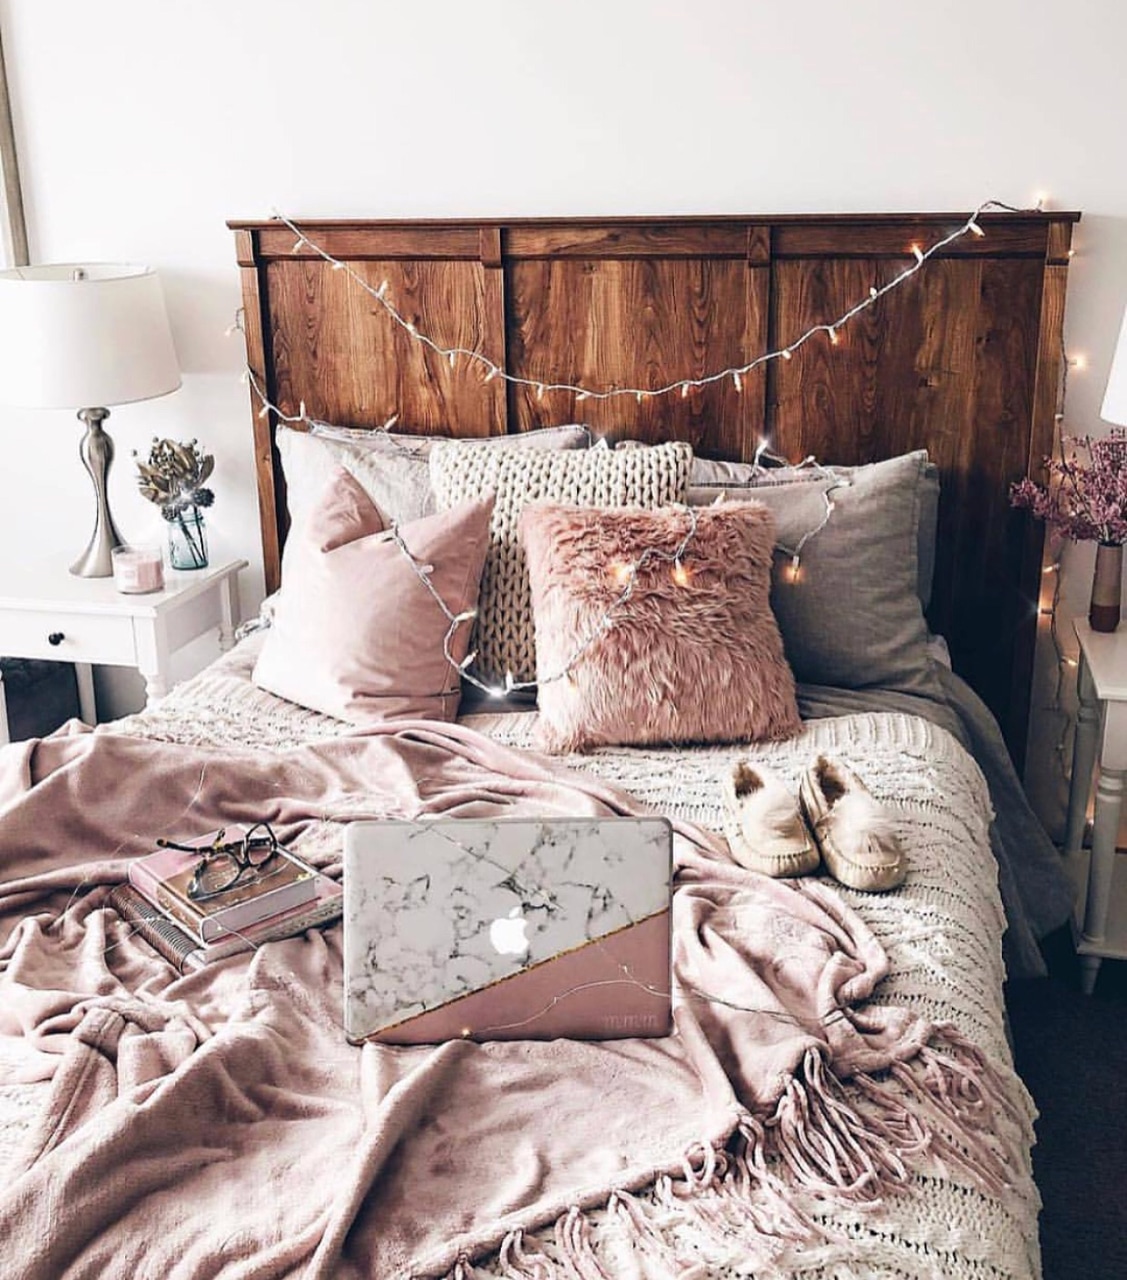 las mejores ideas de habitaciones Tumblr para inspirarte, fotos de habitaciones originales, dormitorio acogedor con mantas color rosado 